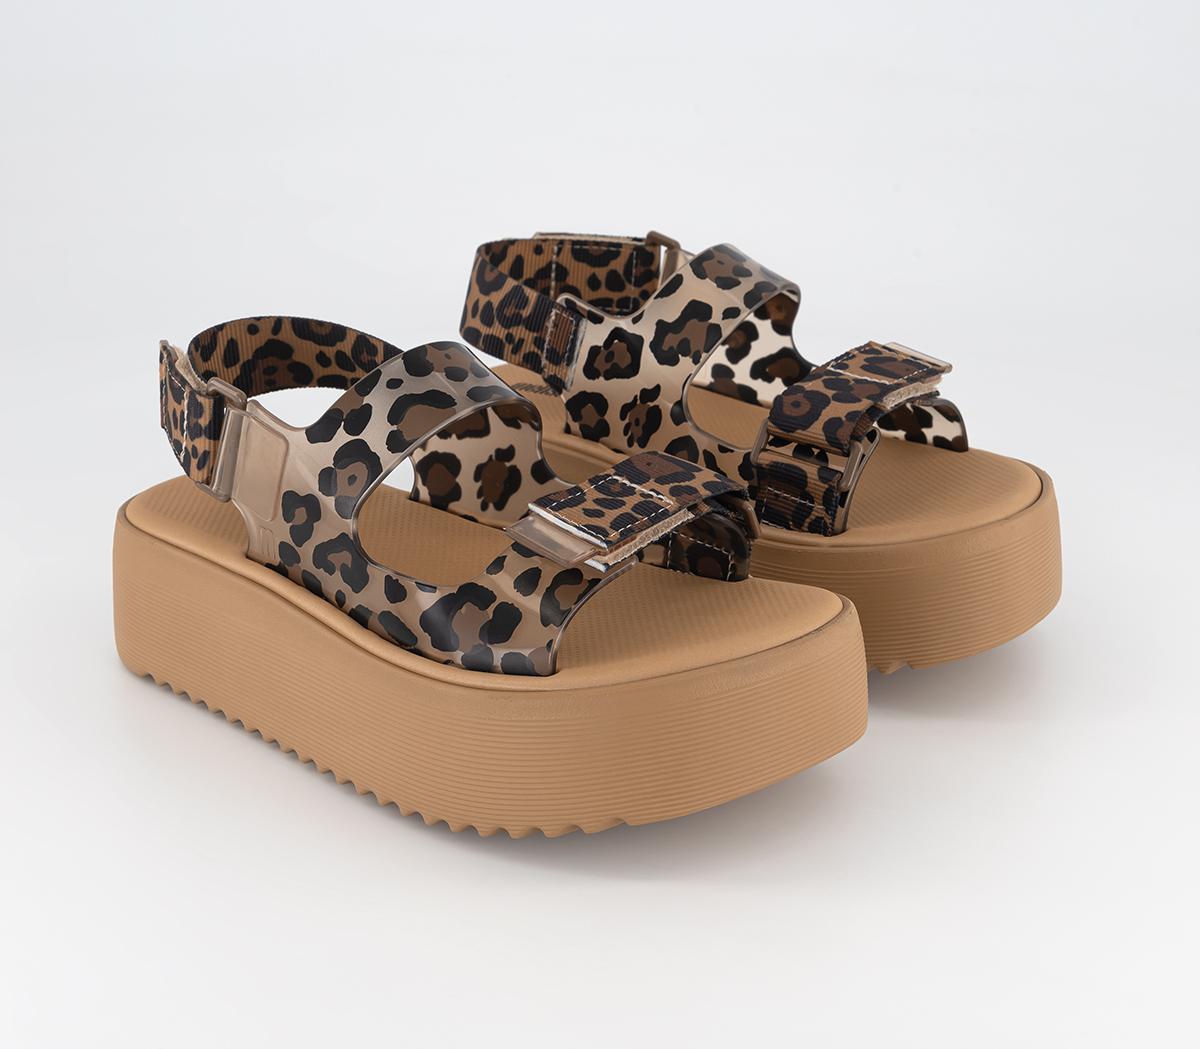 Melissa Womens Brave Papete Platform Sandals Tan Leopard, 5